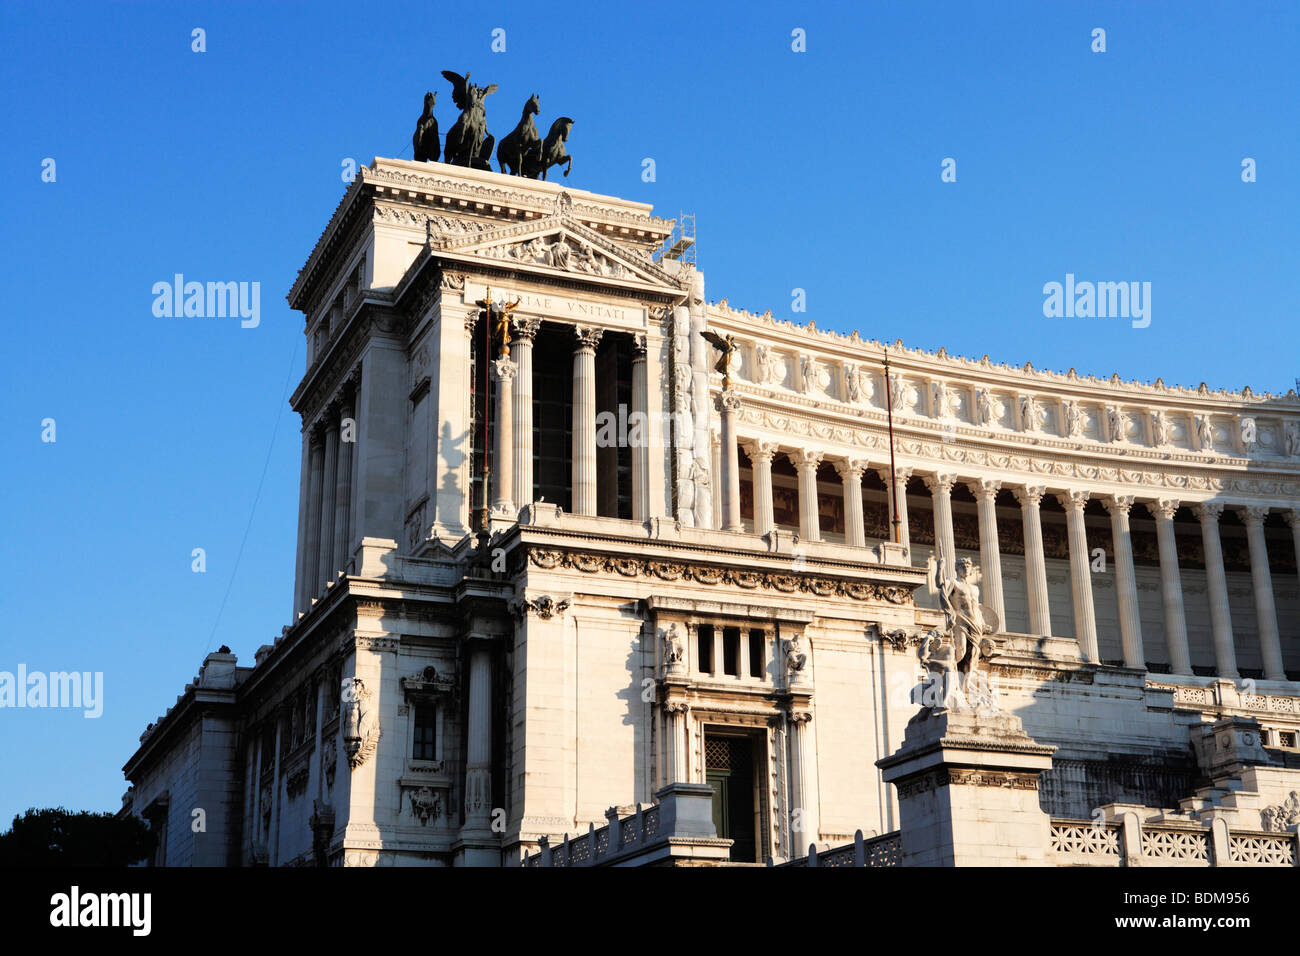 Monumento Nazionale di Vittorio Emanuele II - 'Il Vittoriano' Foto Stock